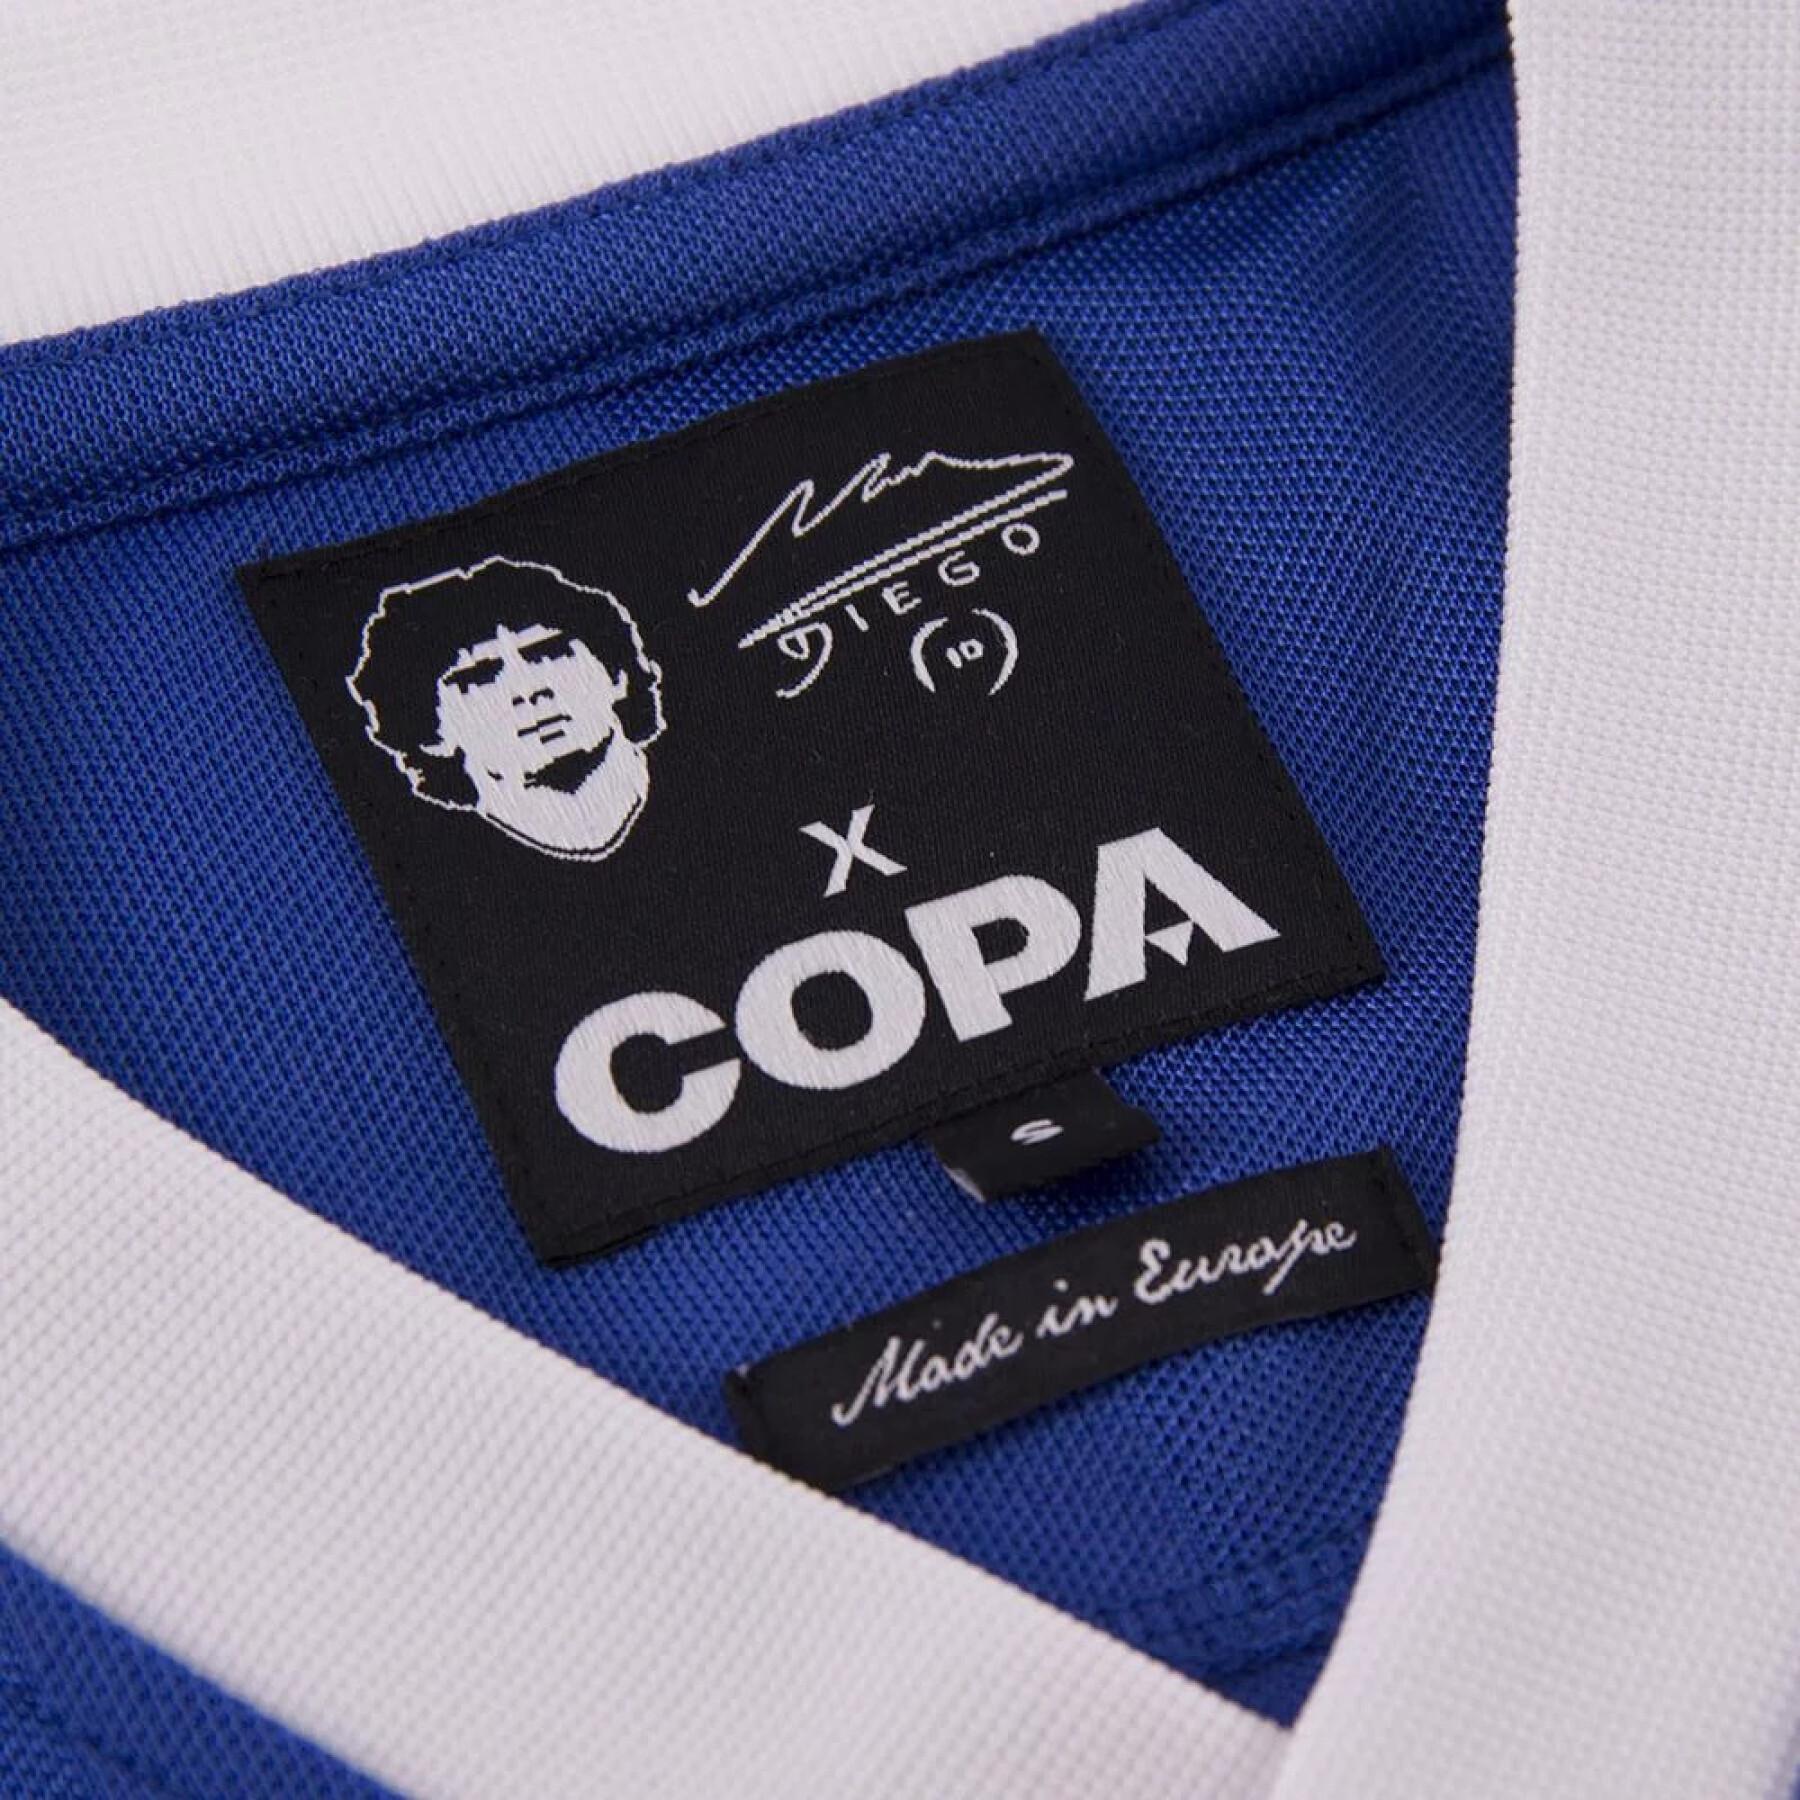 Koszulka Copa Football Maradona Argentina 1986 Away Retro